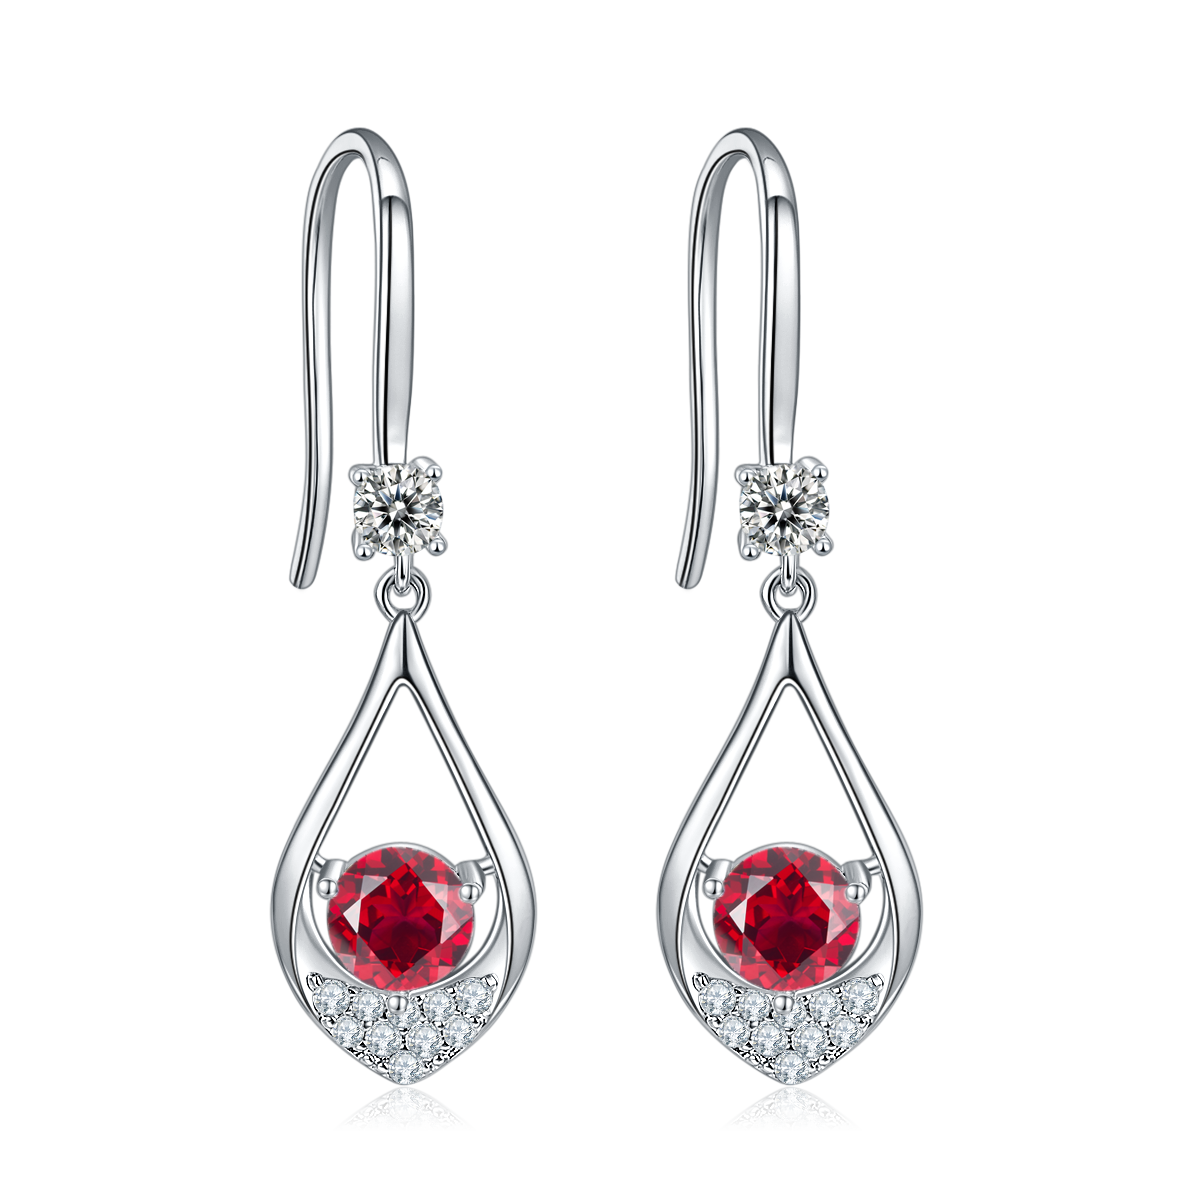 Red Crystal Teardrop Earrings for Women